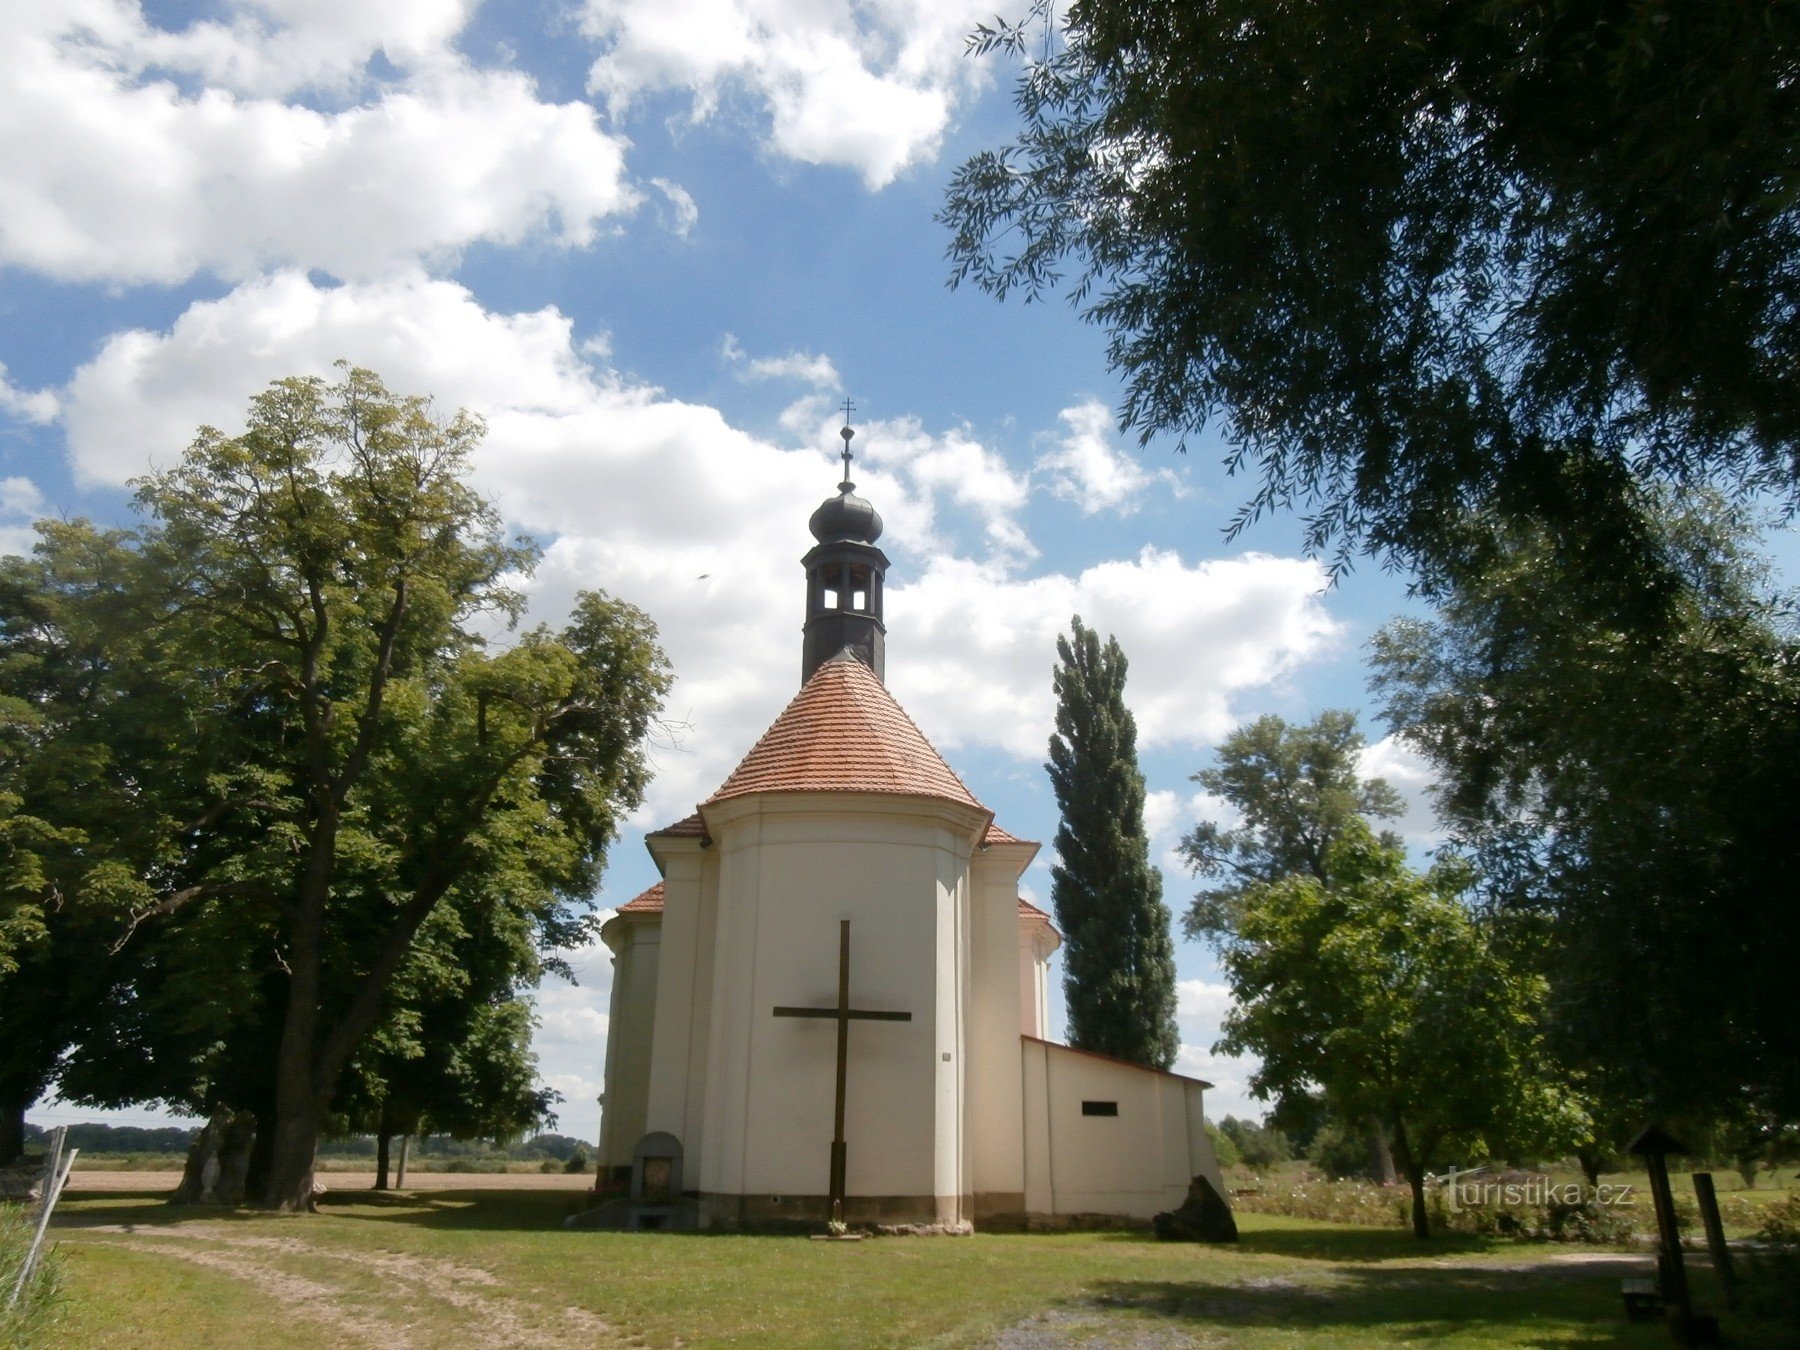 Ein weiteres Schmuckstück in Křešice – die Wallfahrtskirche Mariä Heimsuchung